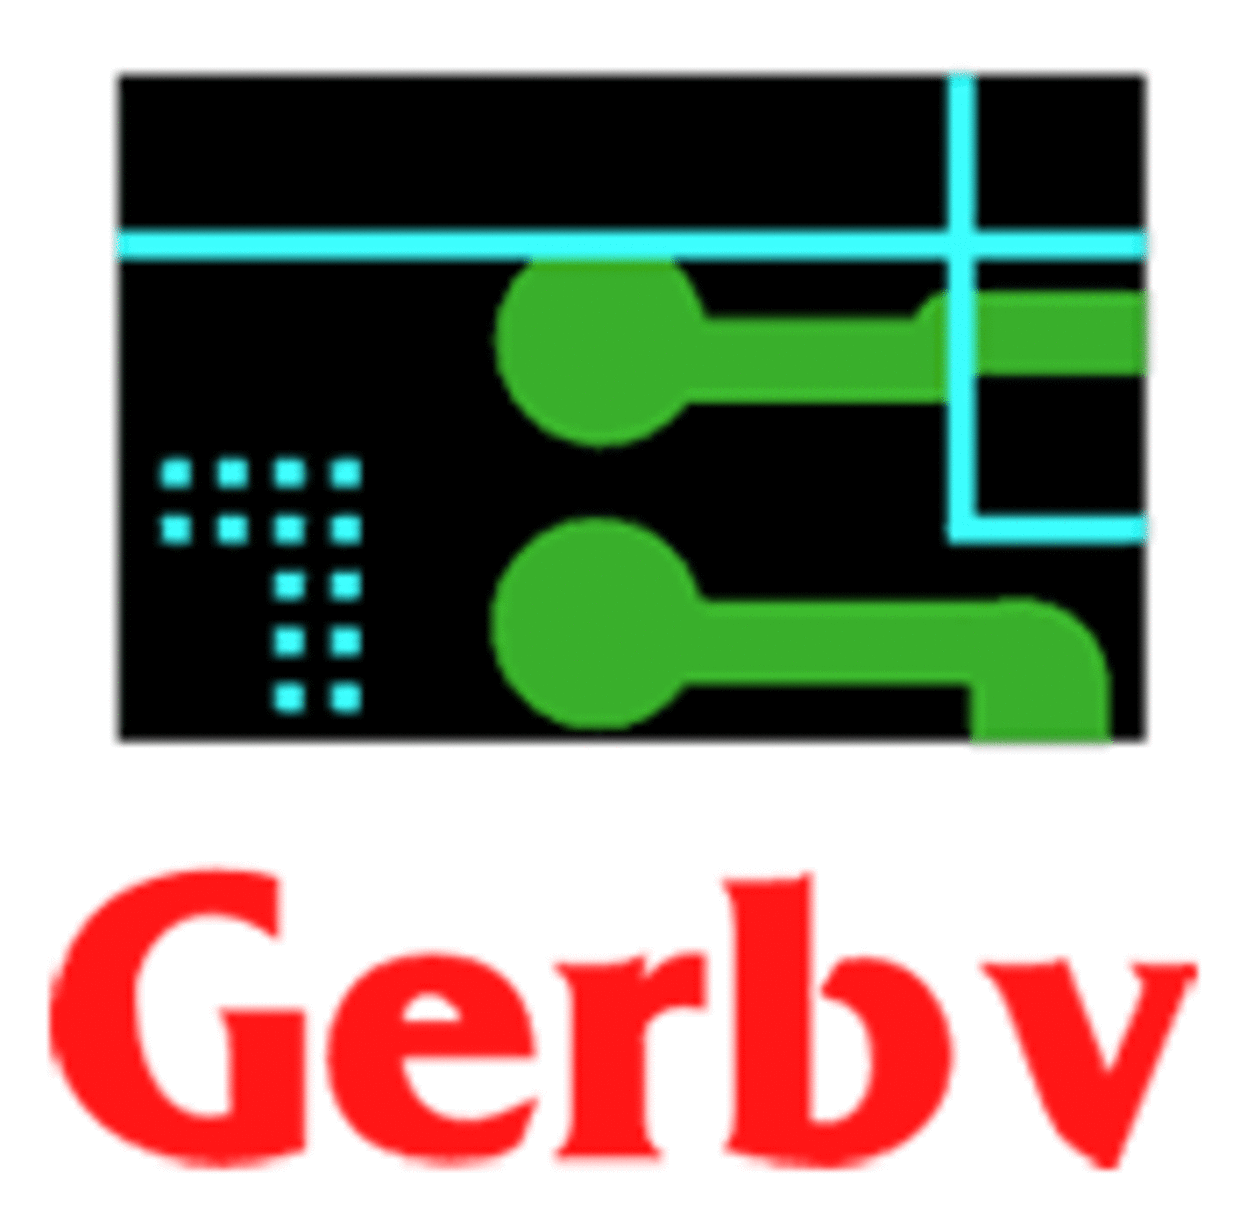 Gerbv - open source Gerber viewer